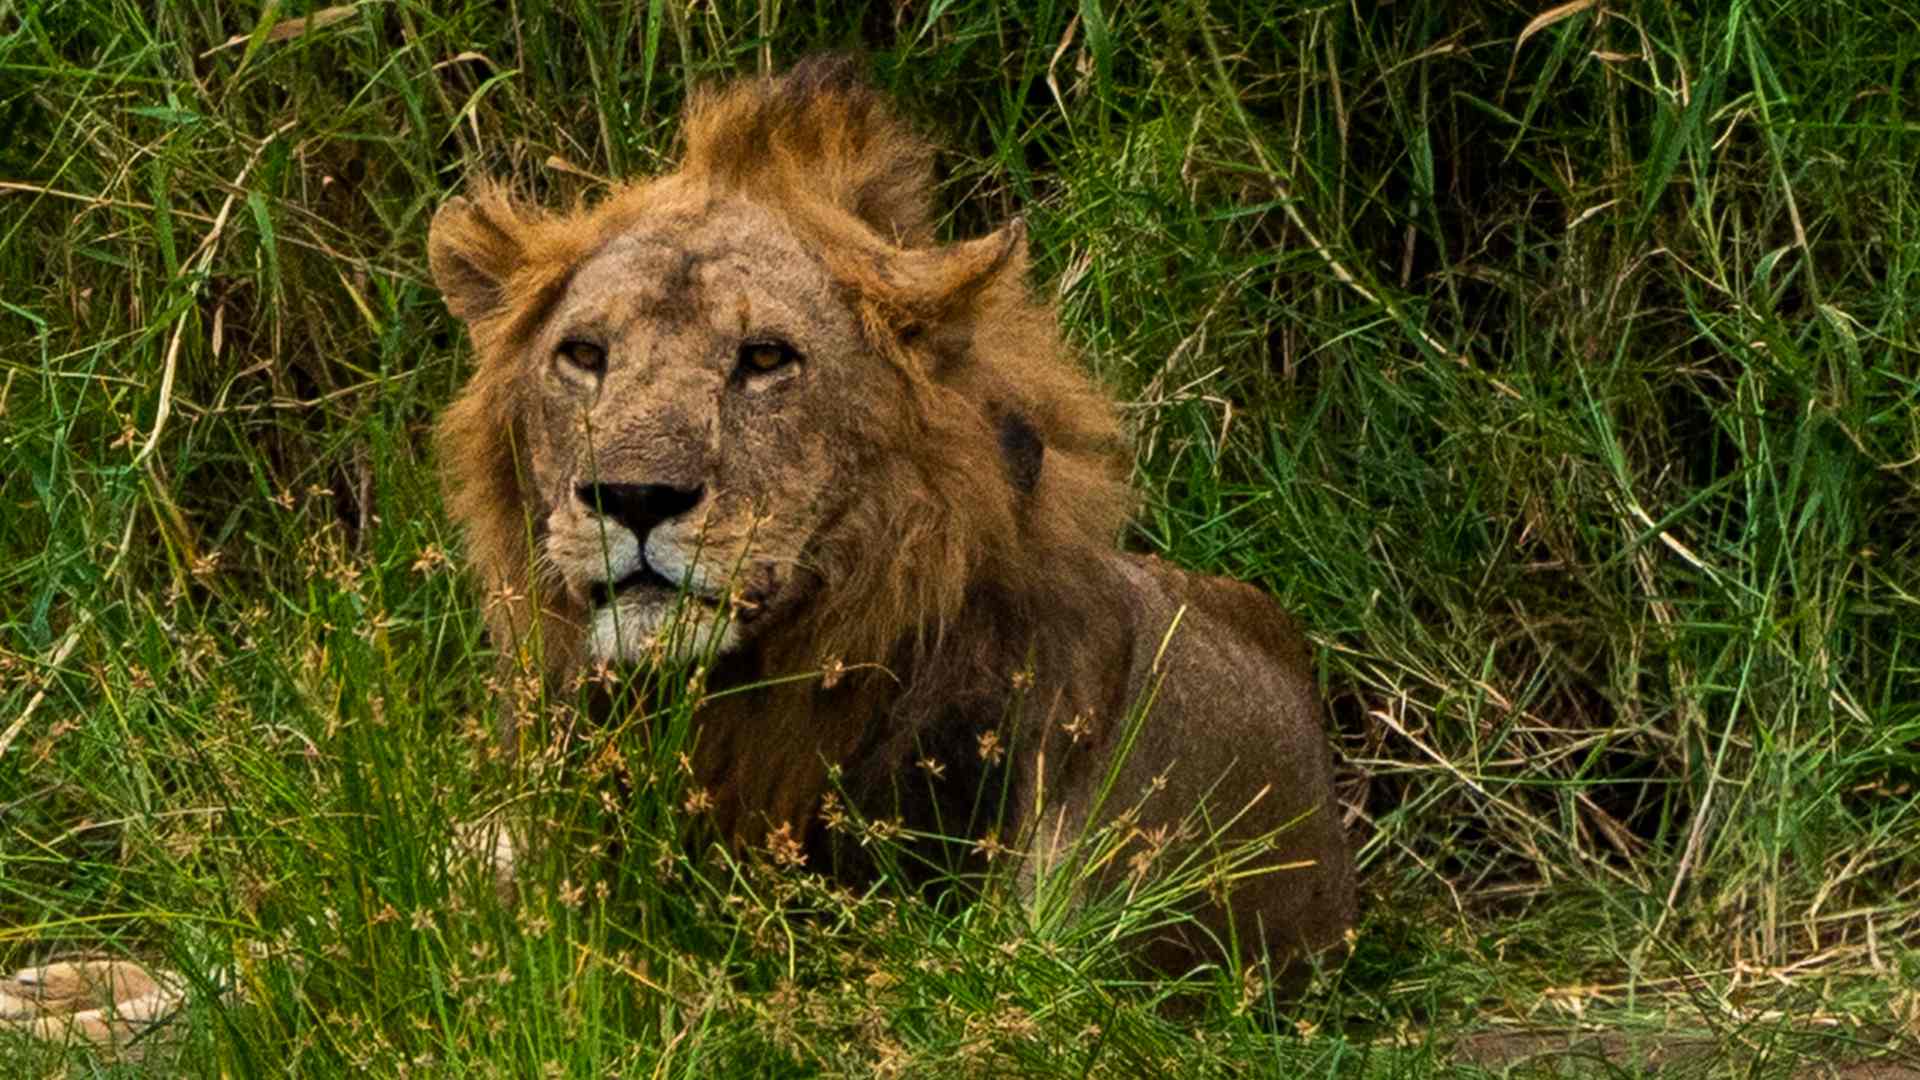 Mate un león y llévese otro gratis: así es el Black Friday de la caza furtiva en África